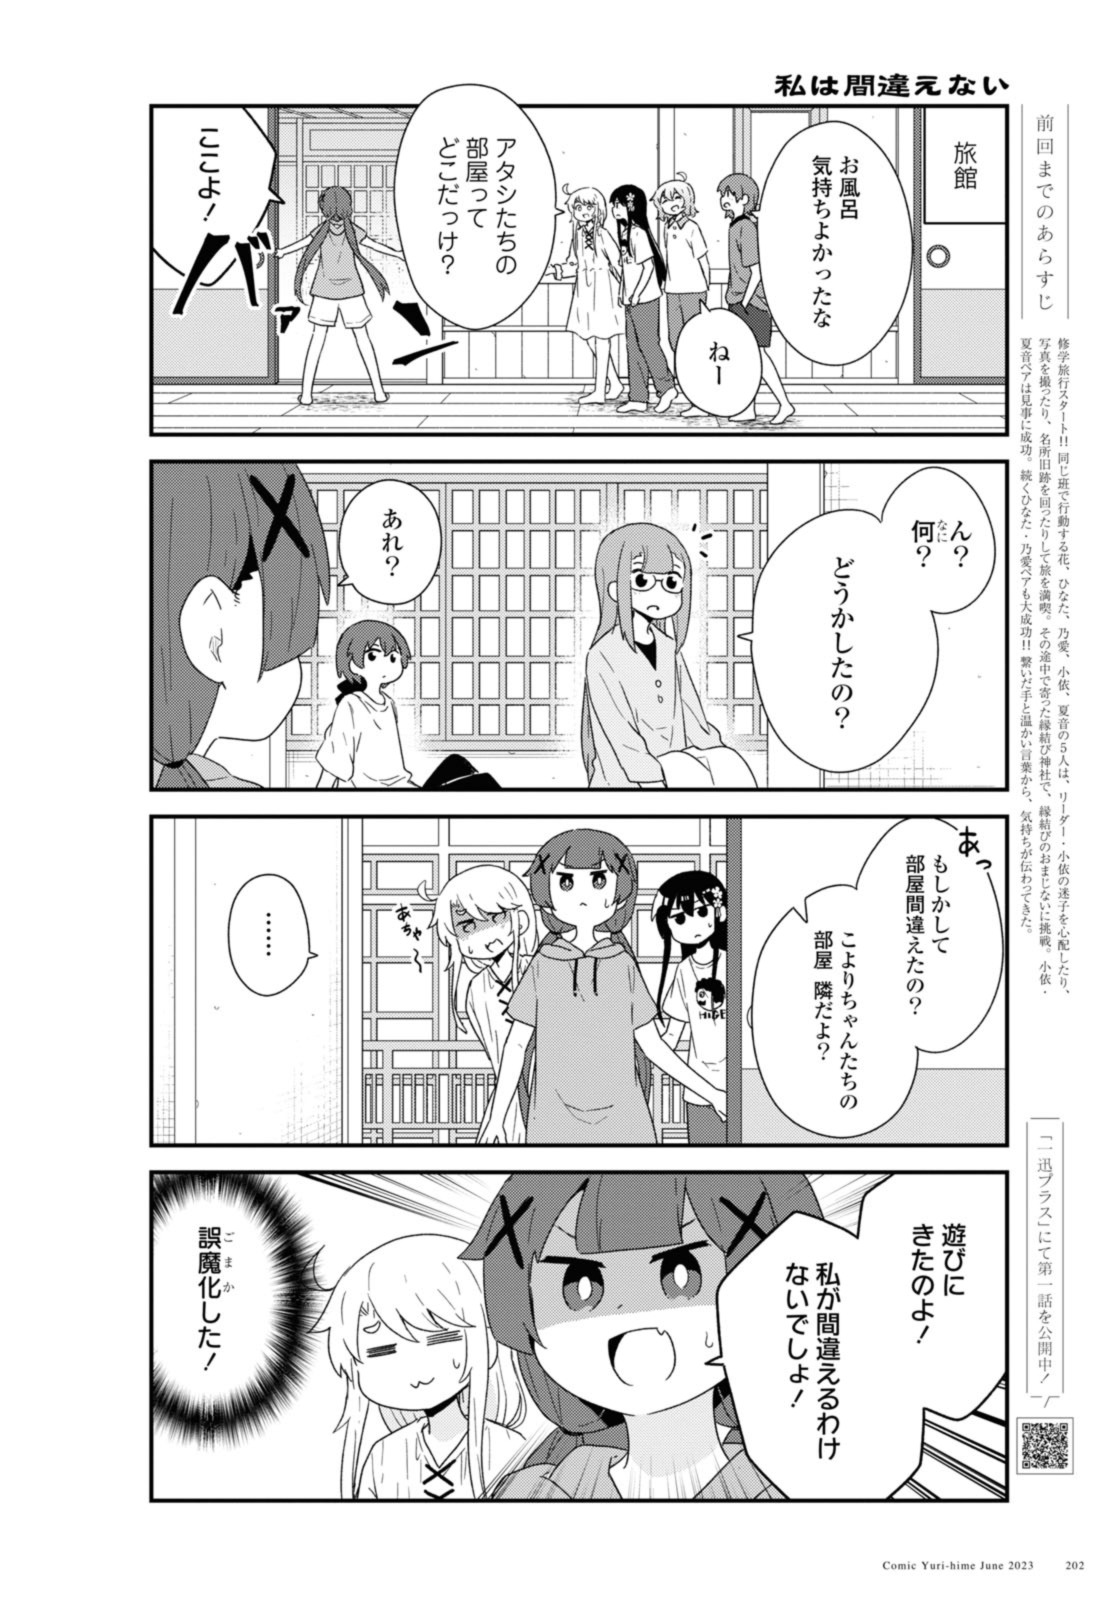 Watashi ni Tenshi ga Maiorita! - Chapter 106 - Page 2